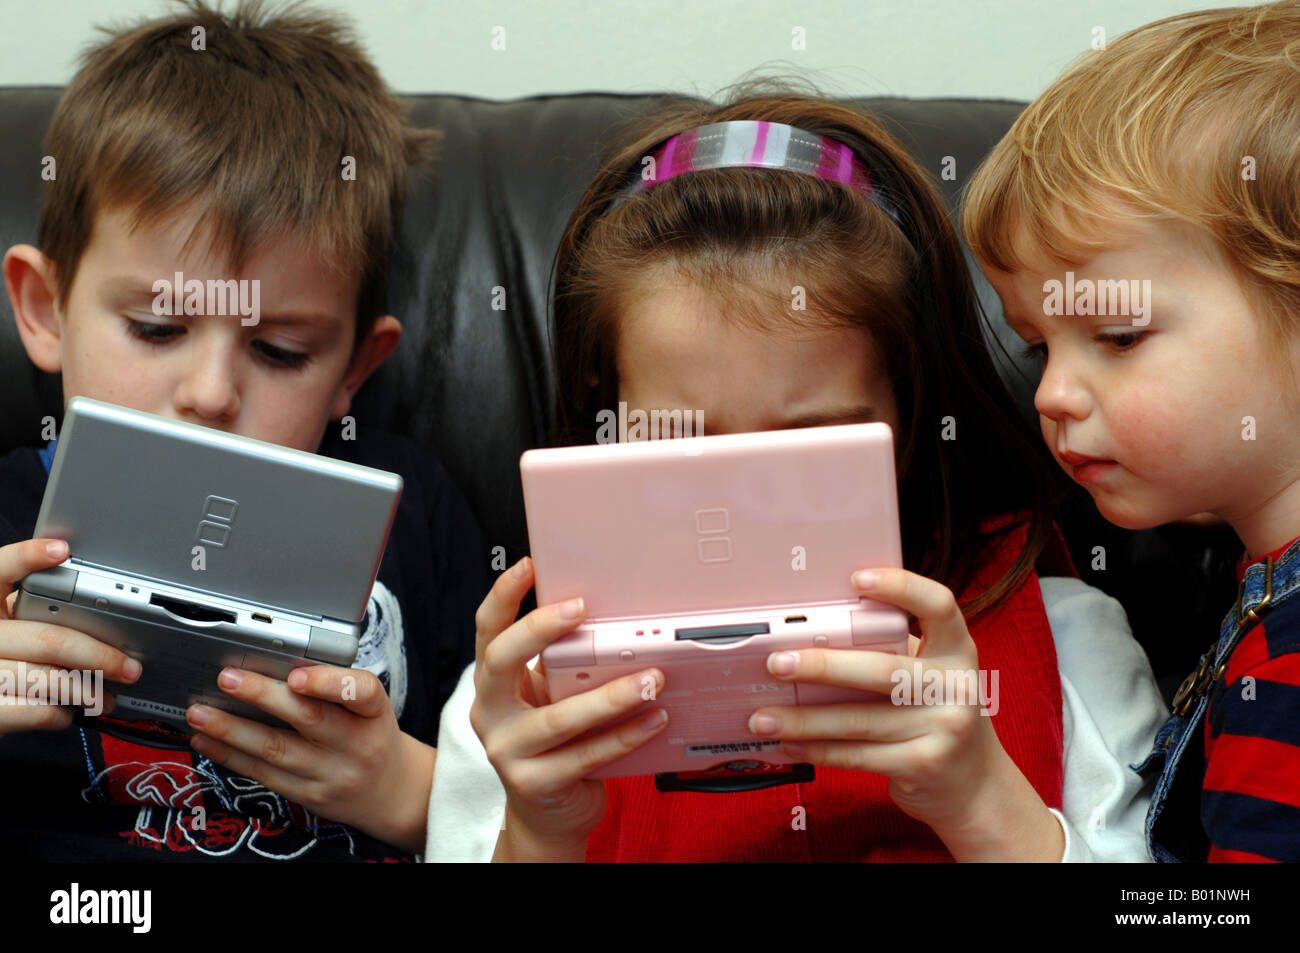 Les enfants jouer Nintendo DS lite jeu vidéo Photo Stock - Alamy